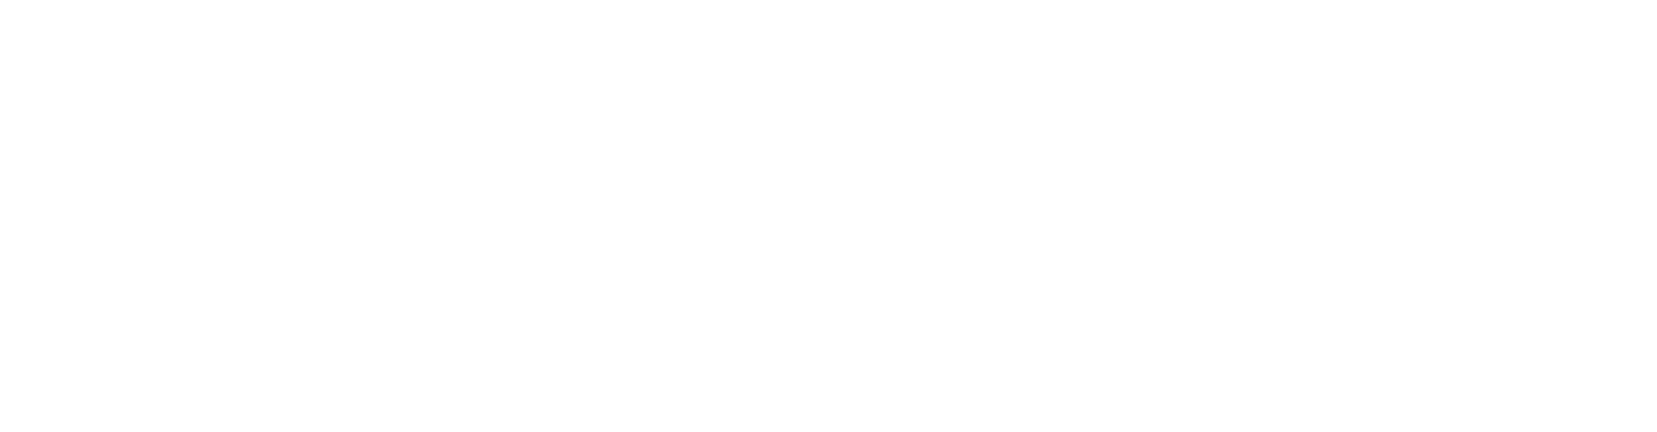 Norfolk Southern logo grand pour les fonds sombres (PNG transparent)